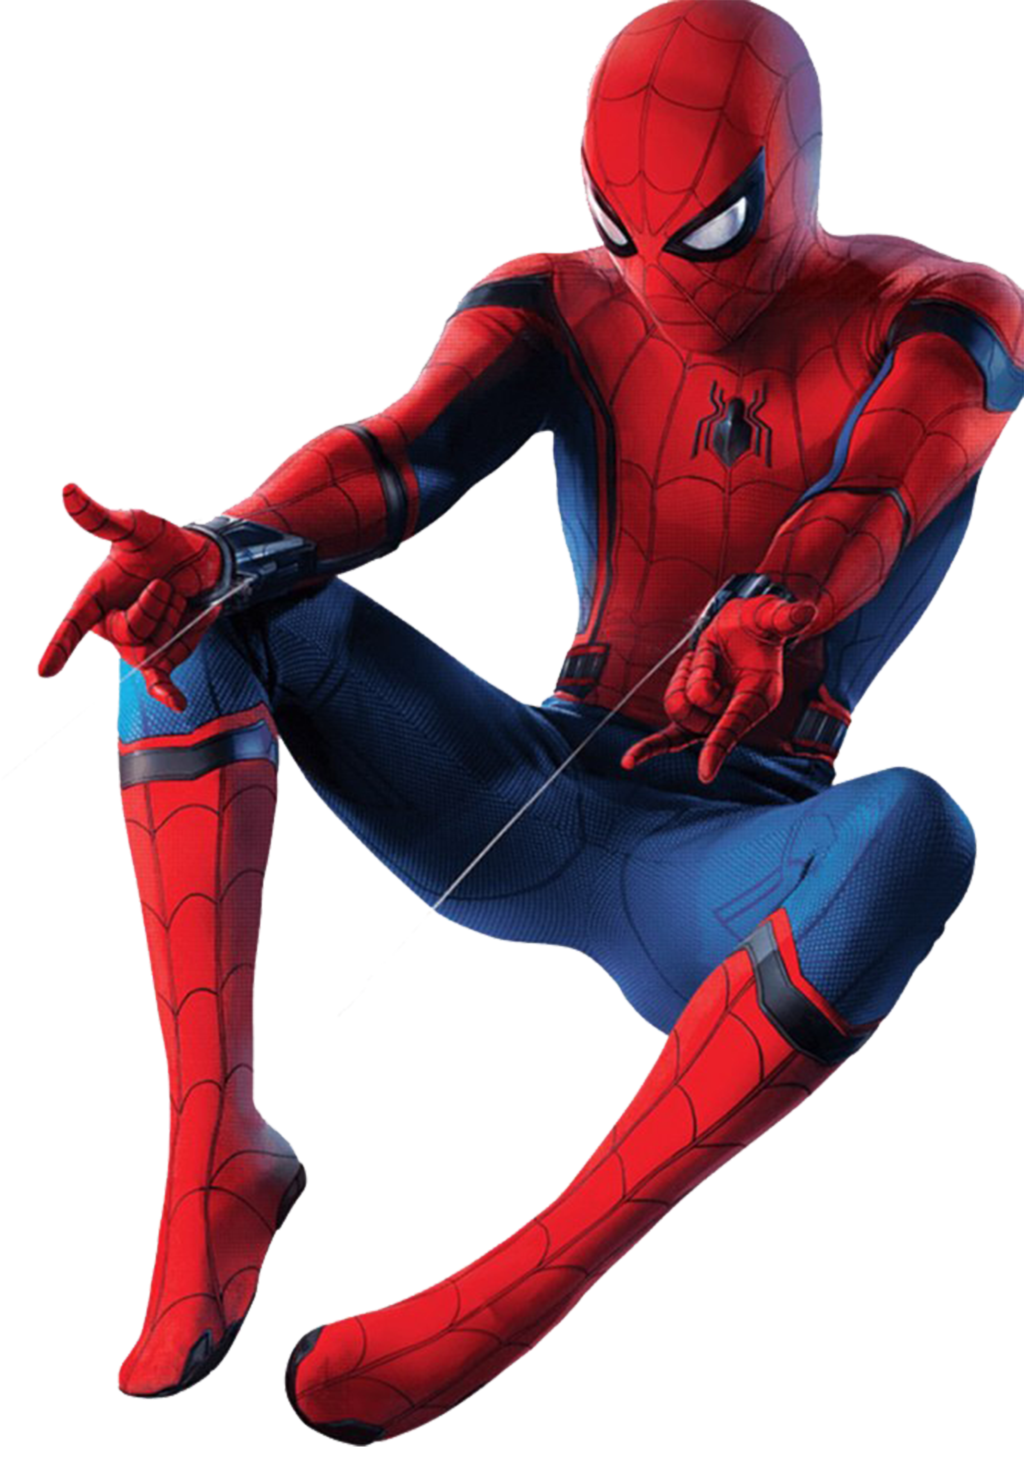 Spider-Man lejos de la imagen Transparente en casa